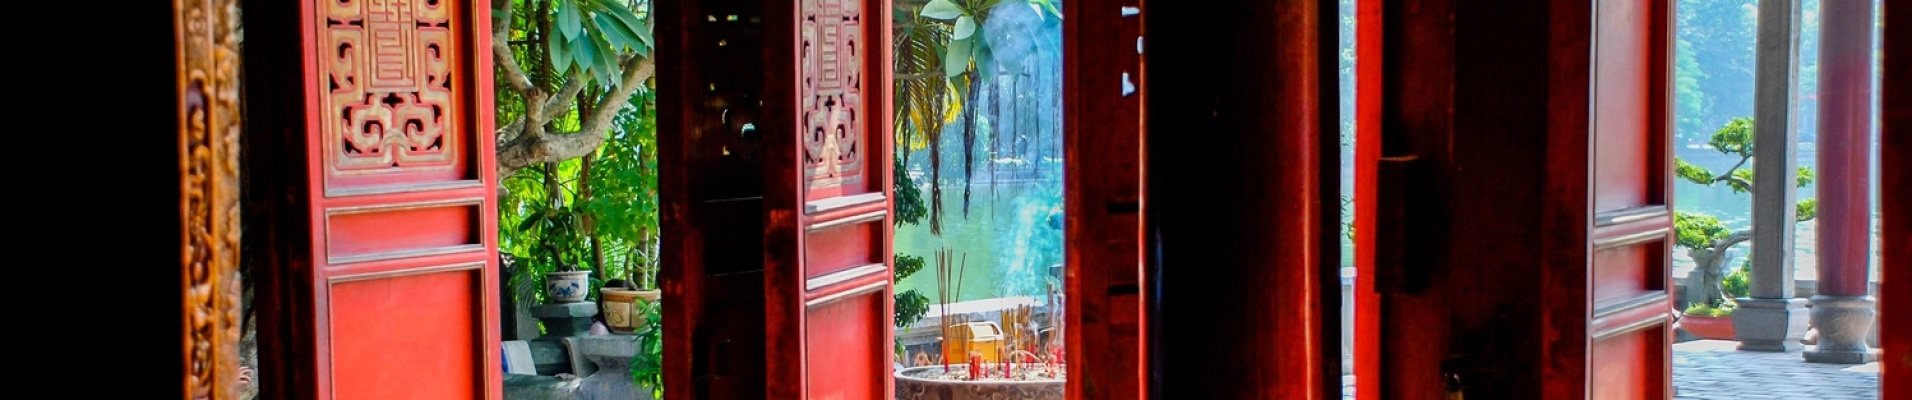 Temple de la littérature, Hanoi